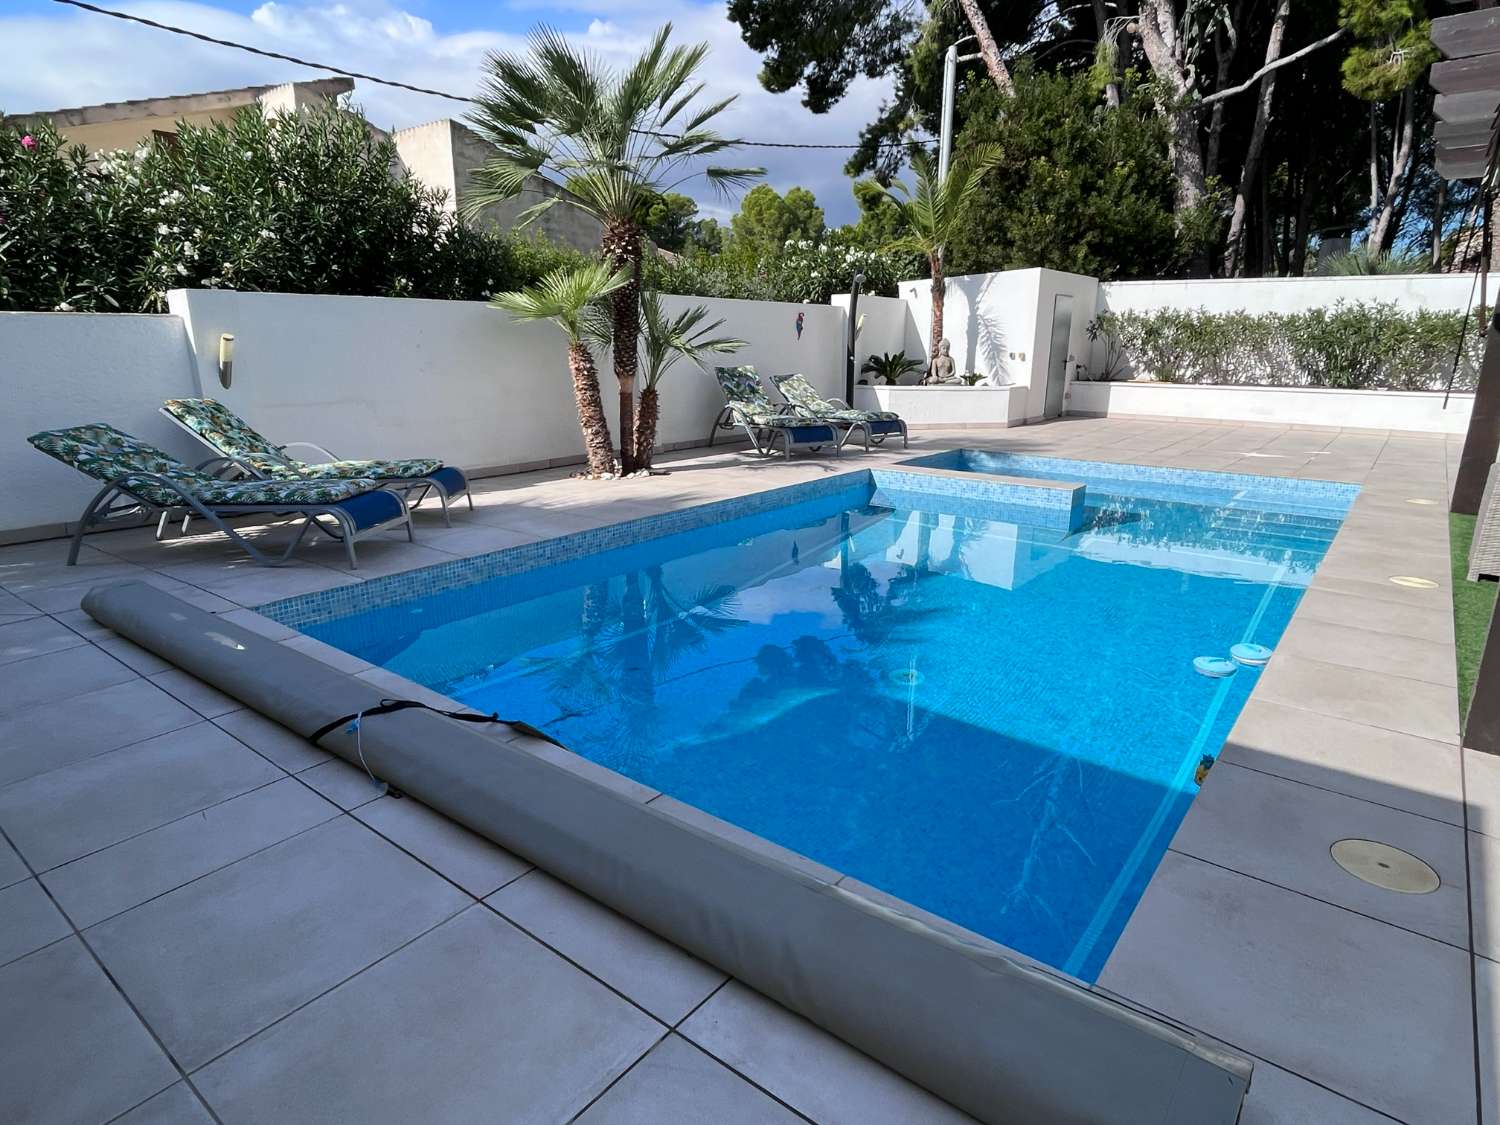 Encantadora villa moderna con piscina en Las Tras Calas